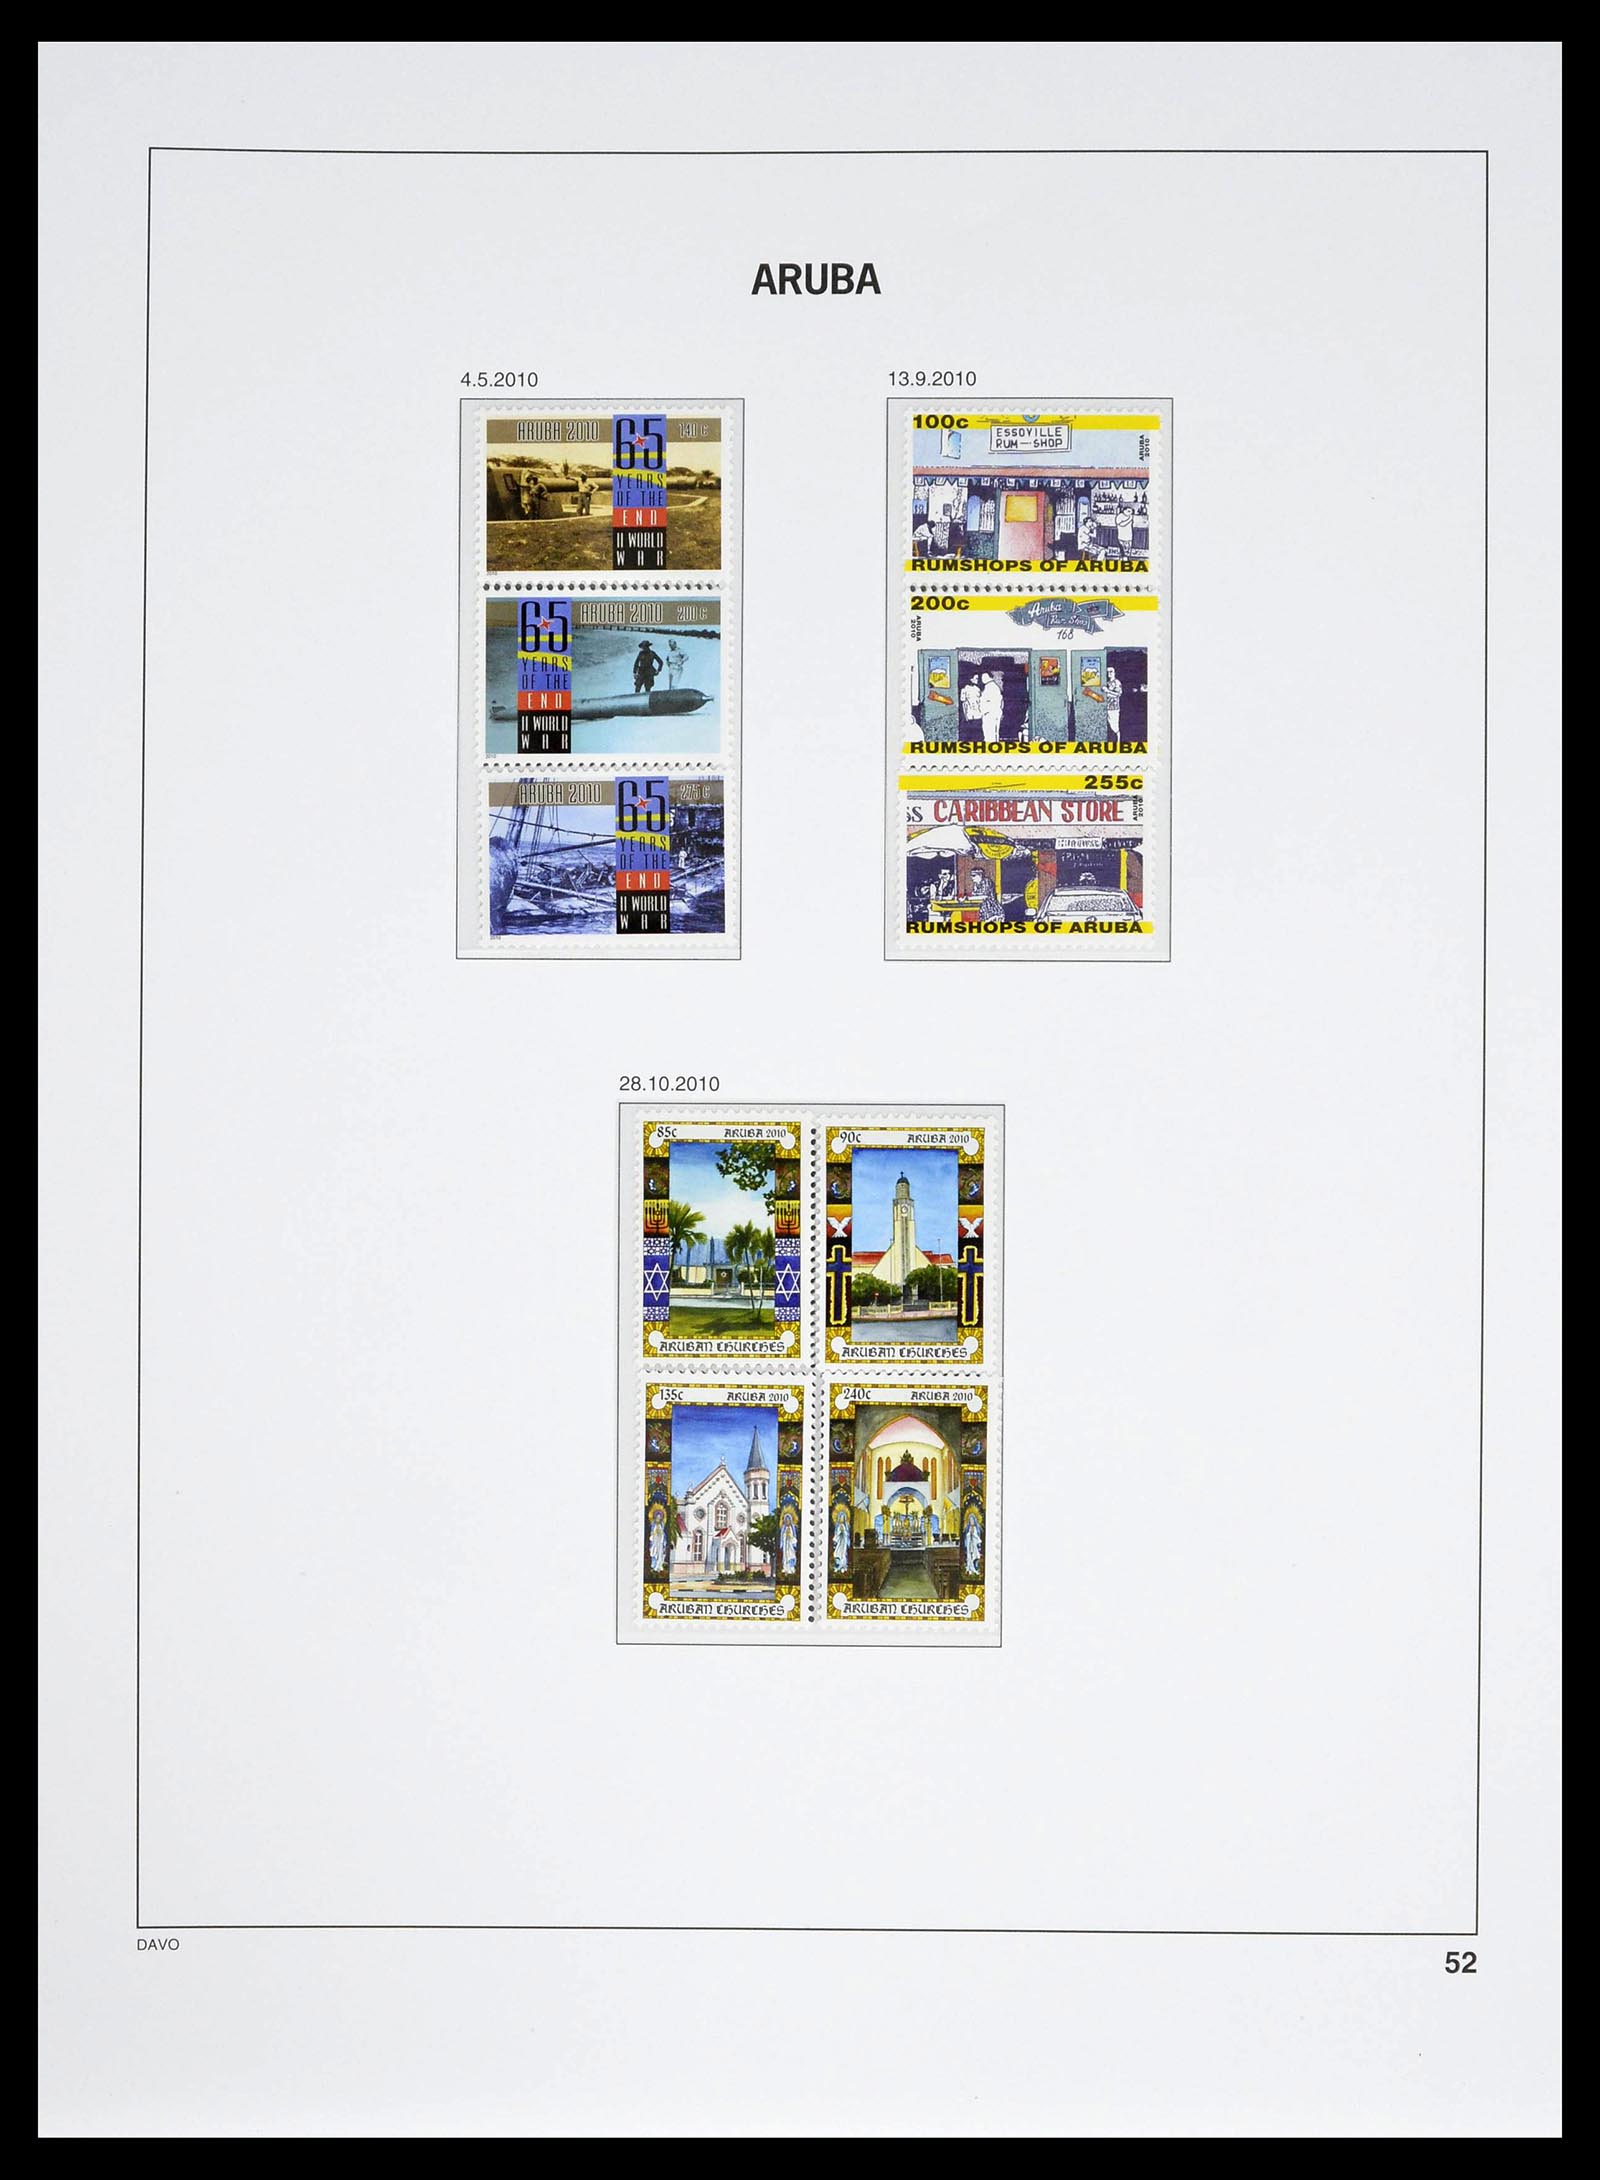 39361 0052 - Stamp collection 39361 Aruba 1986-2013.